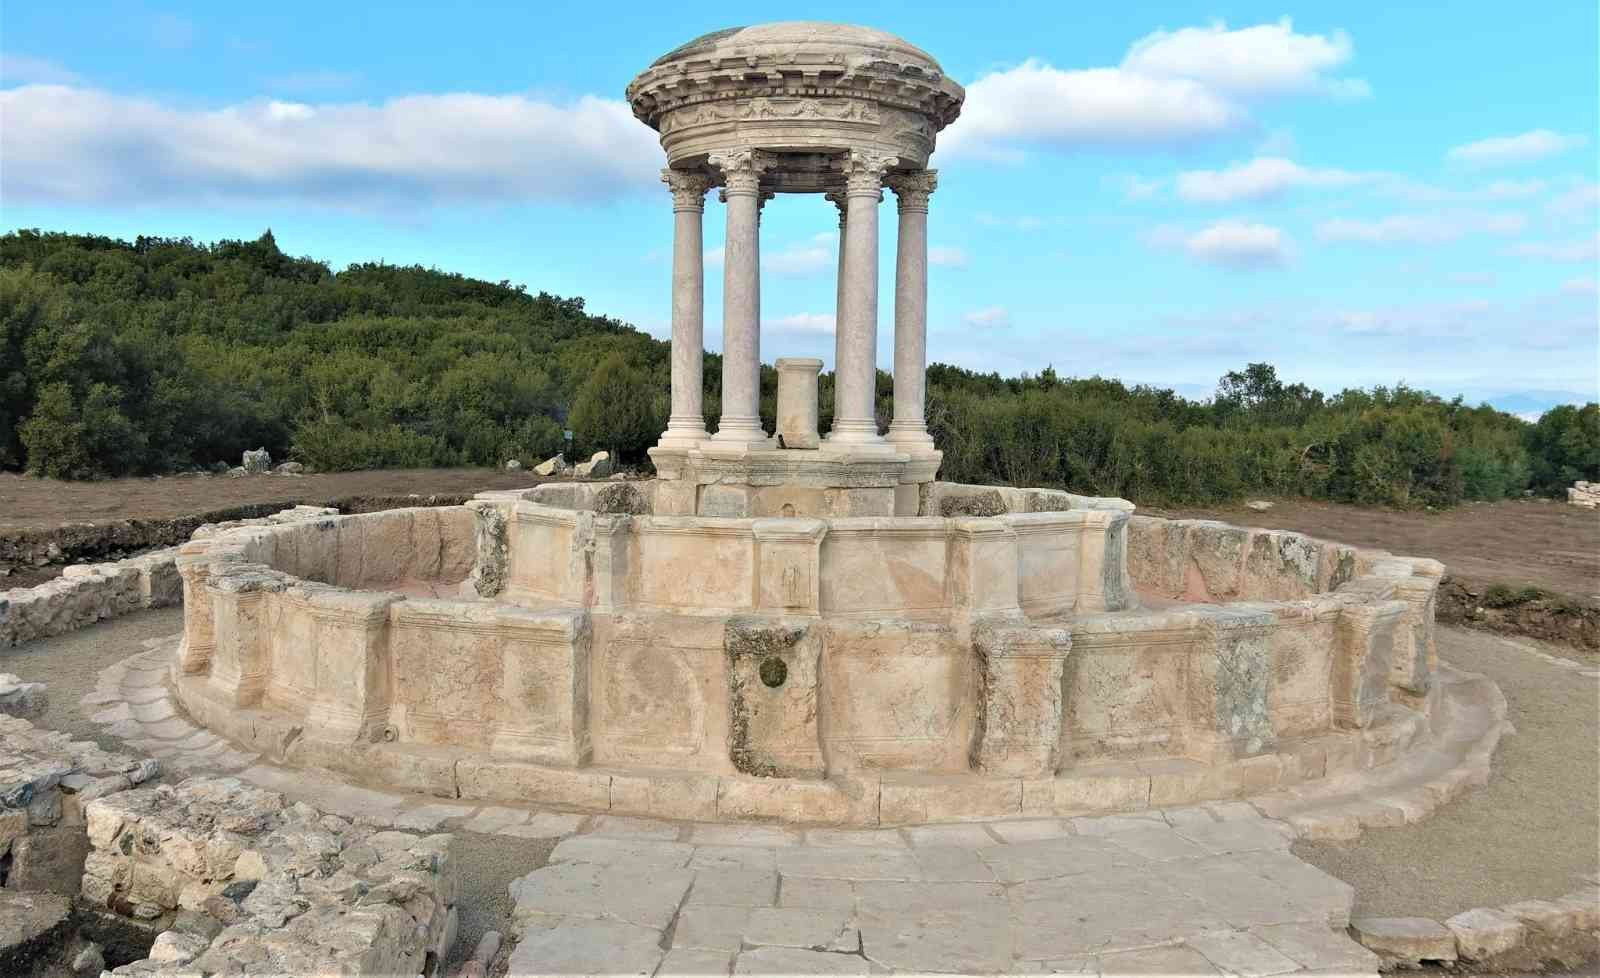 Kibyra Antik Kenti’nin görkemli çeşmesi restorasyon ile ayağa kaldırıldı